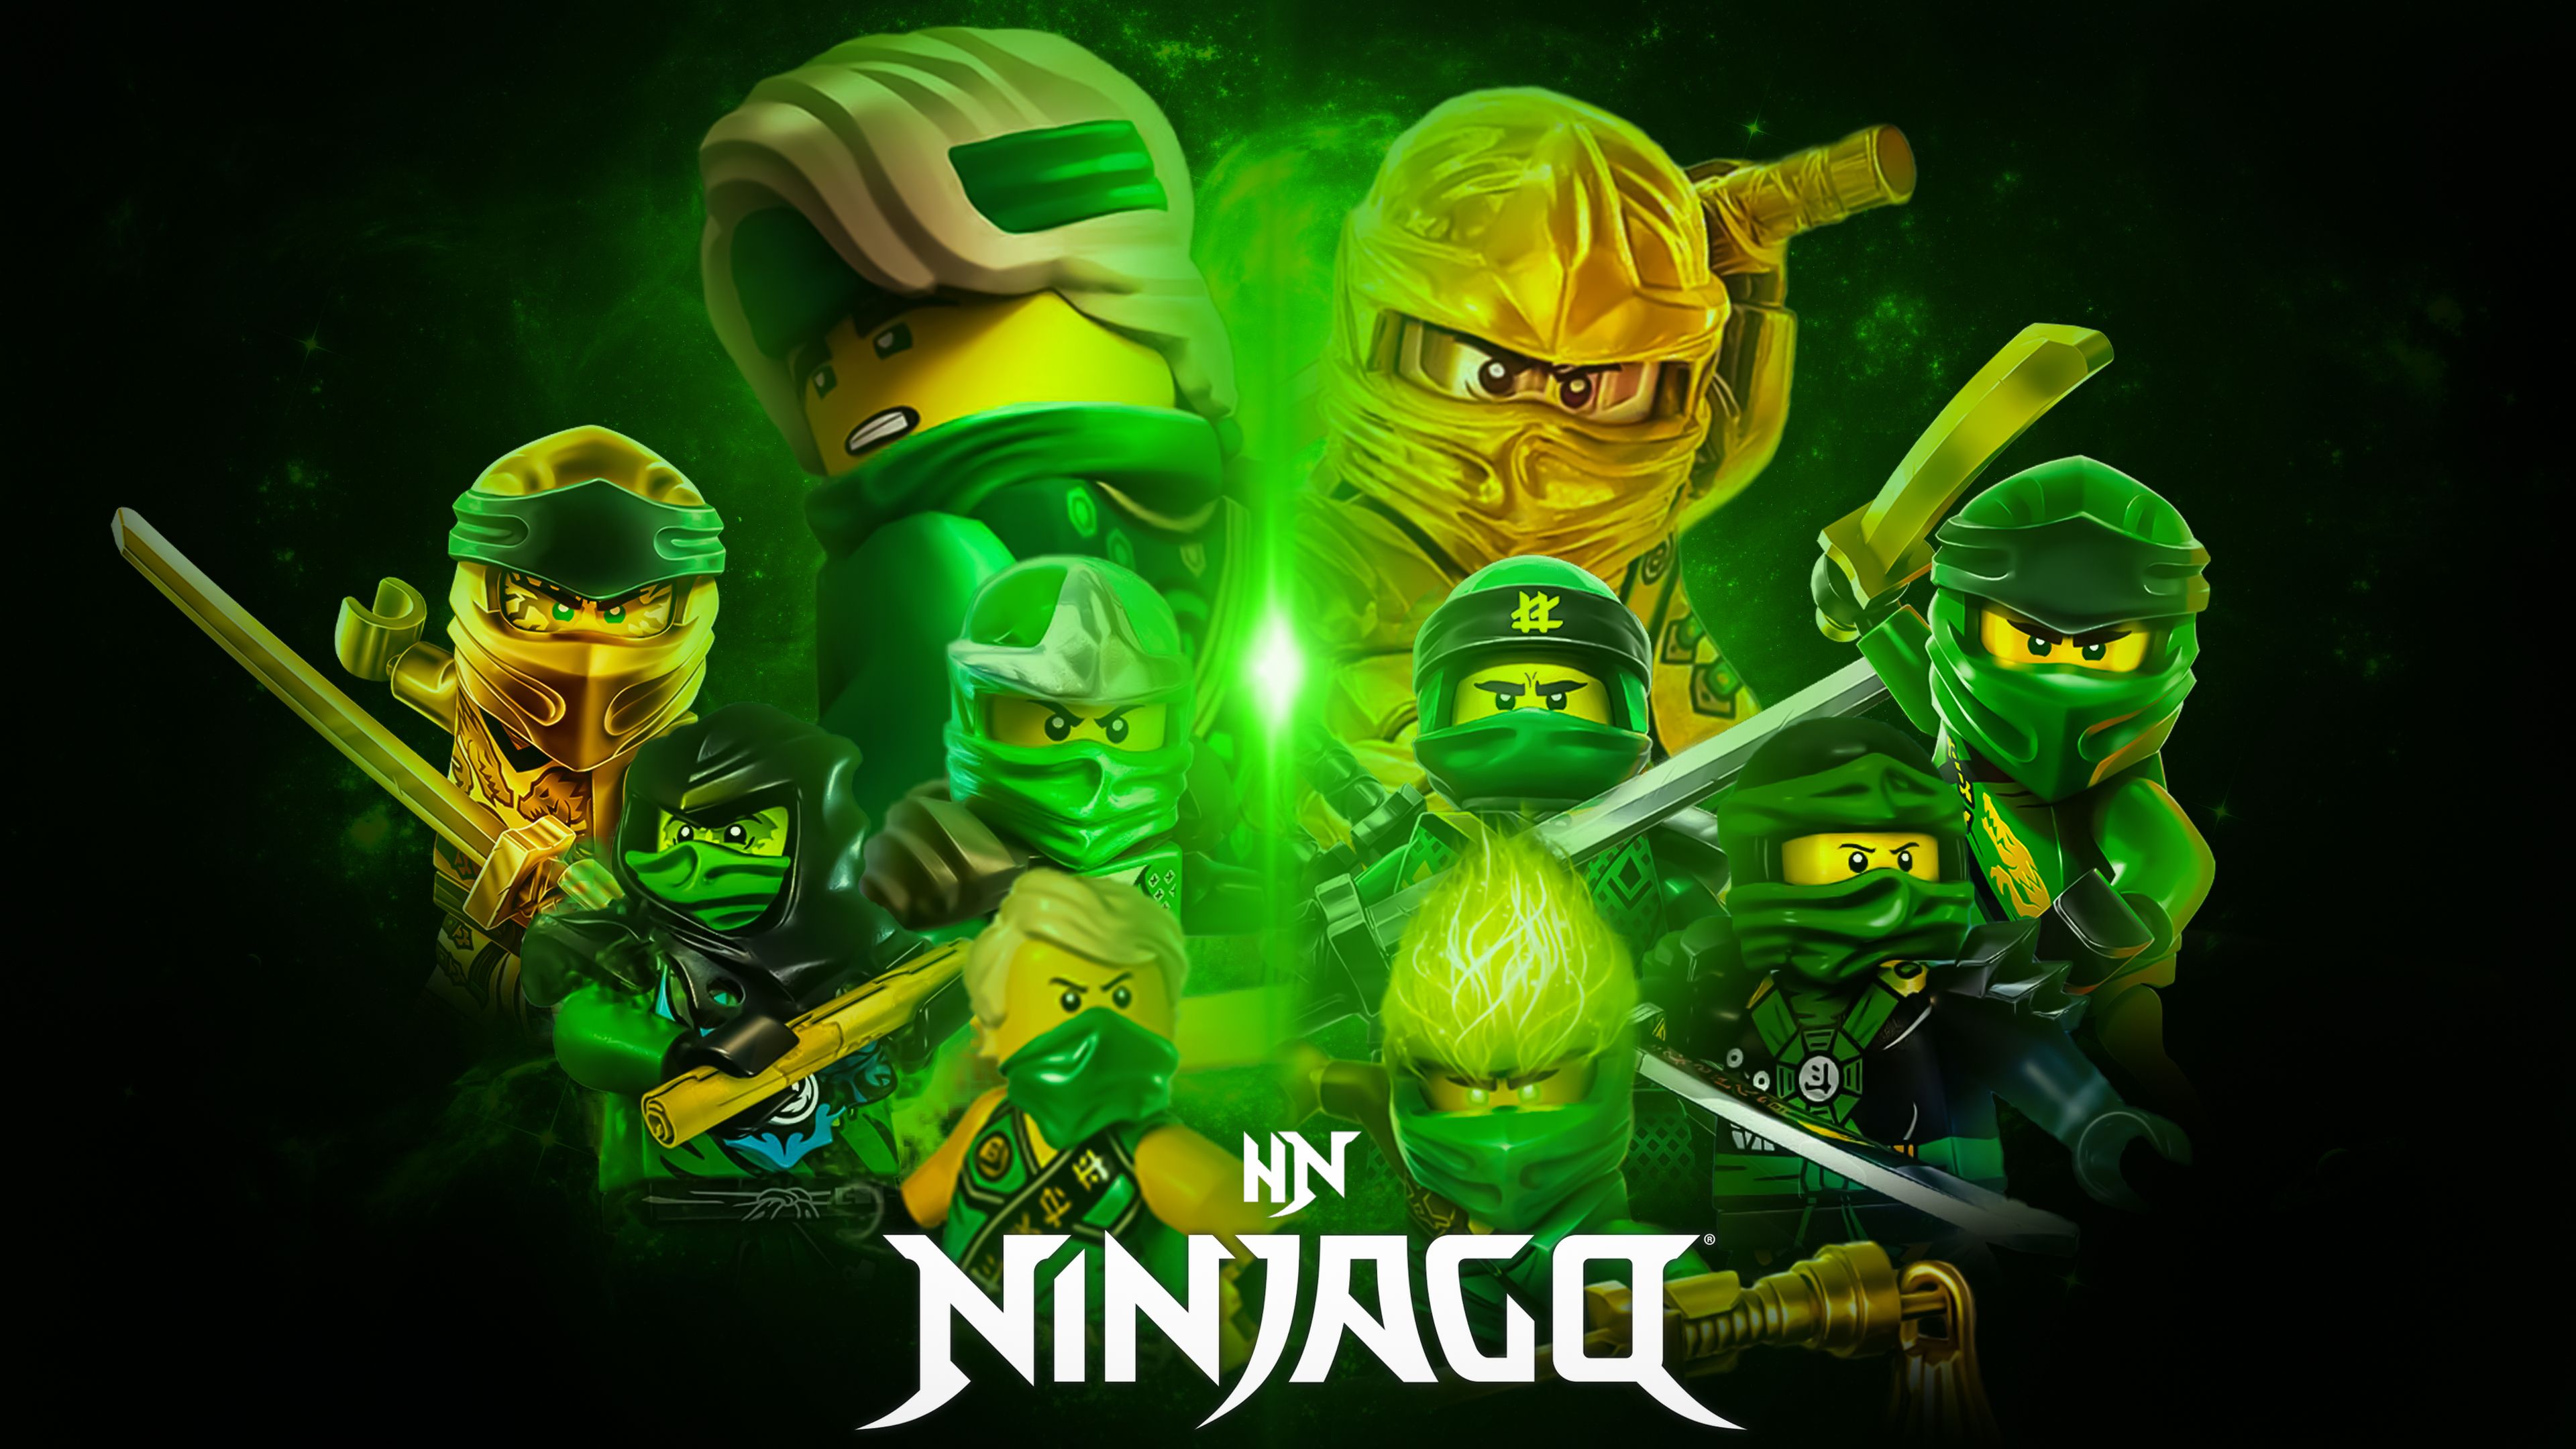 Lego Ninjago Lloyd Wallpapers